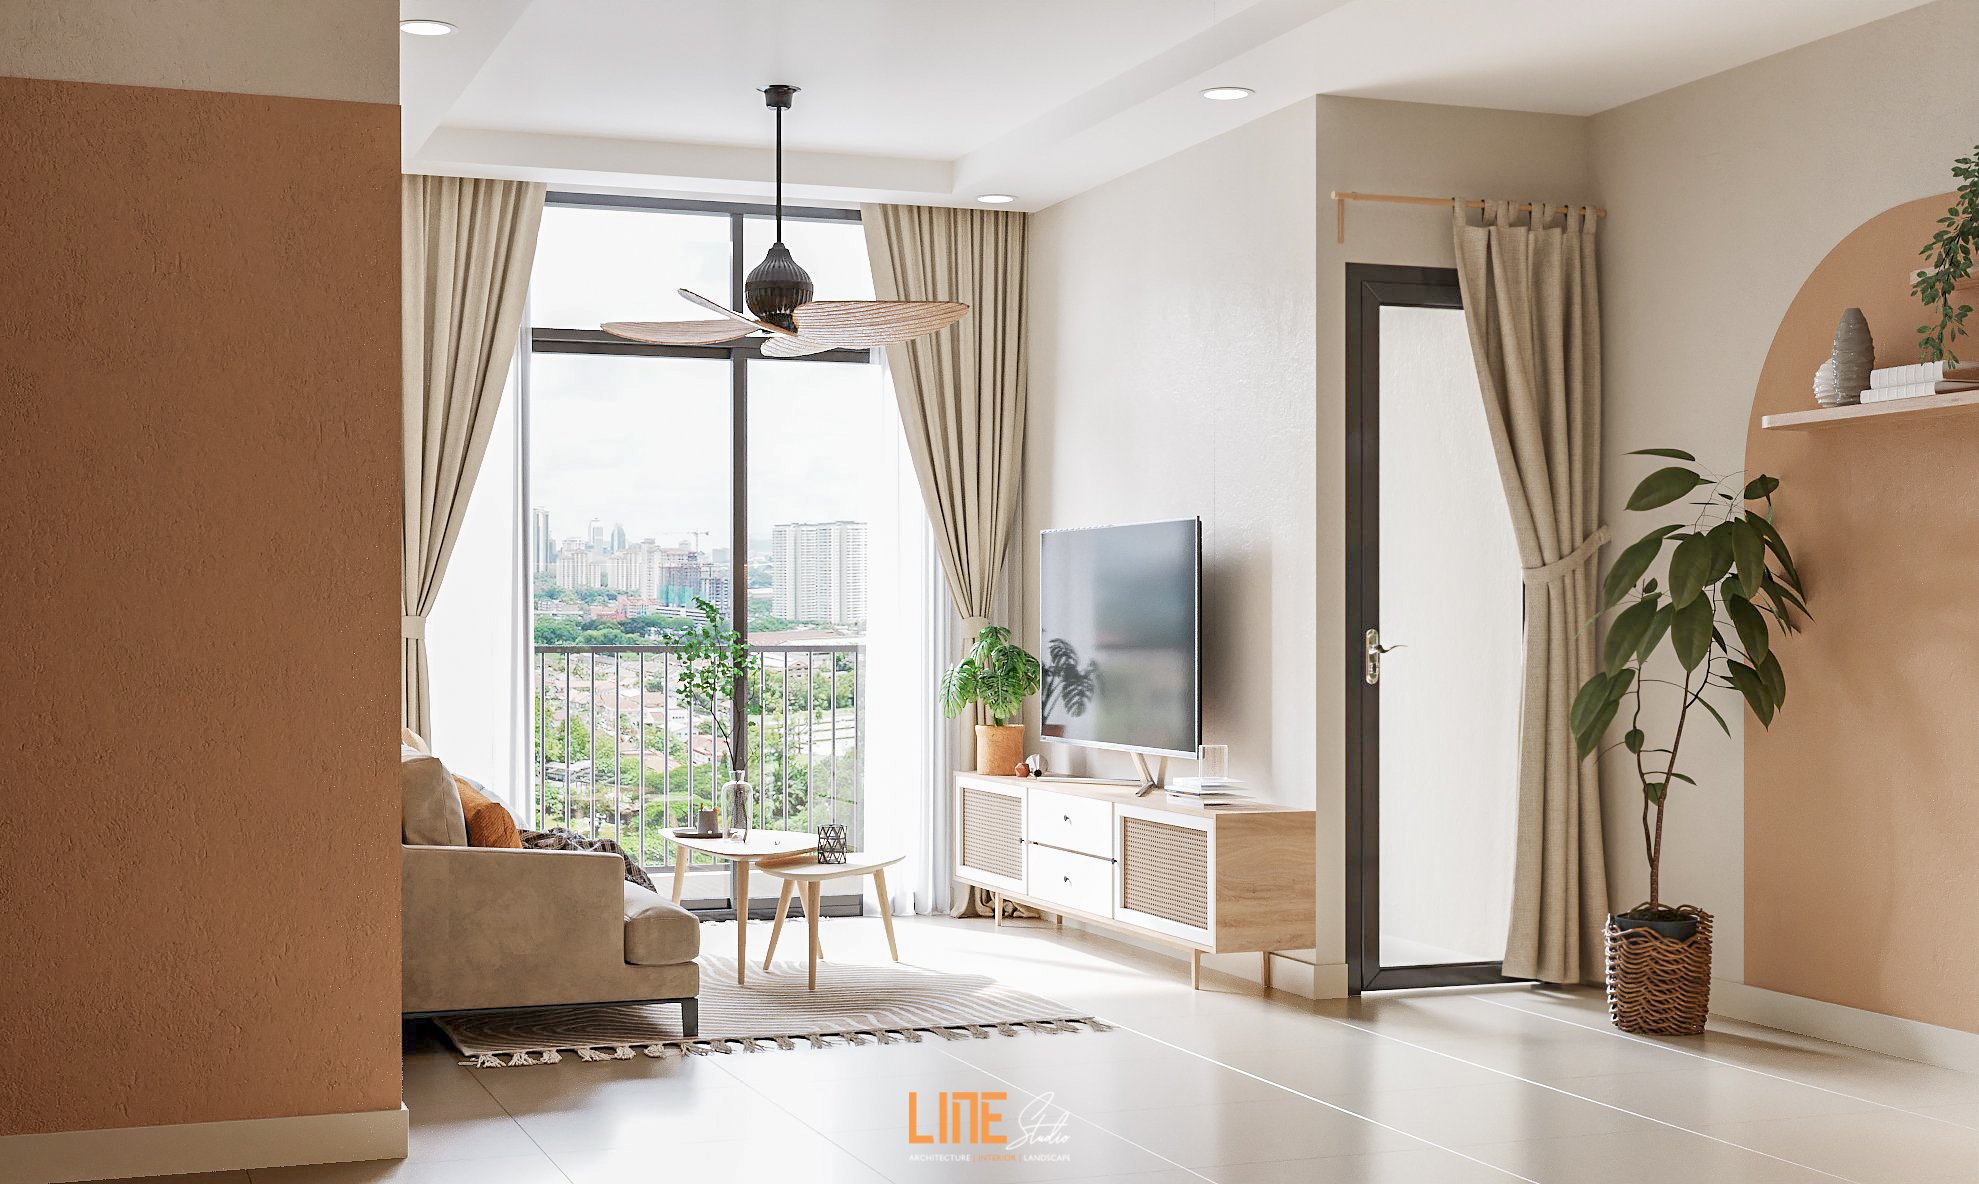 LINE STUDIO thiết kế thi công nội thất căn hộ Phú Đông Premier - 67m2 - 2PN - Anh Đạt